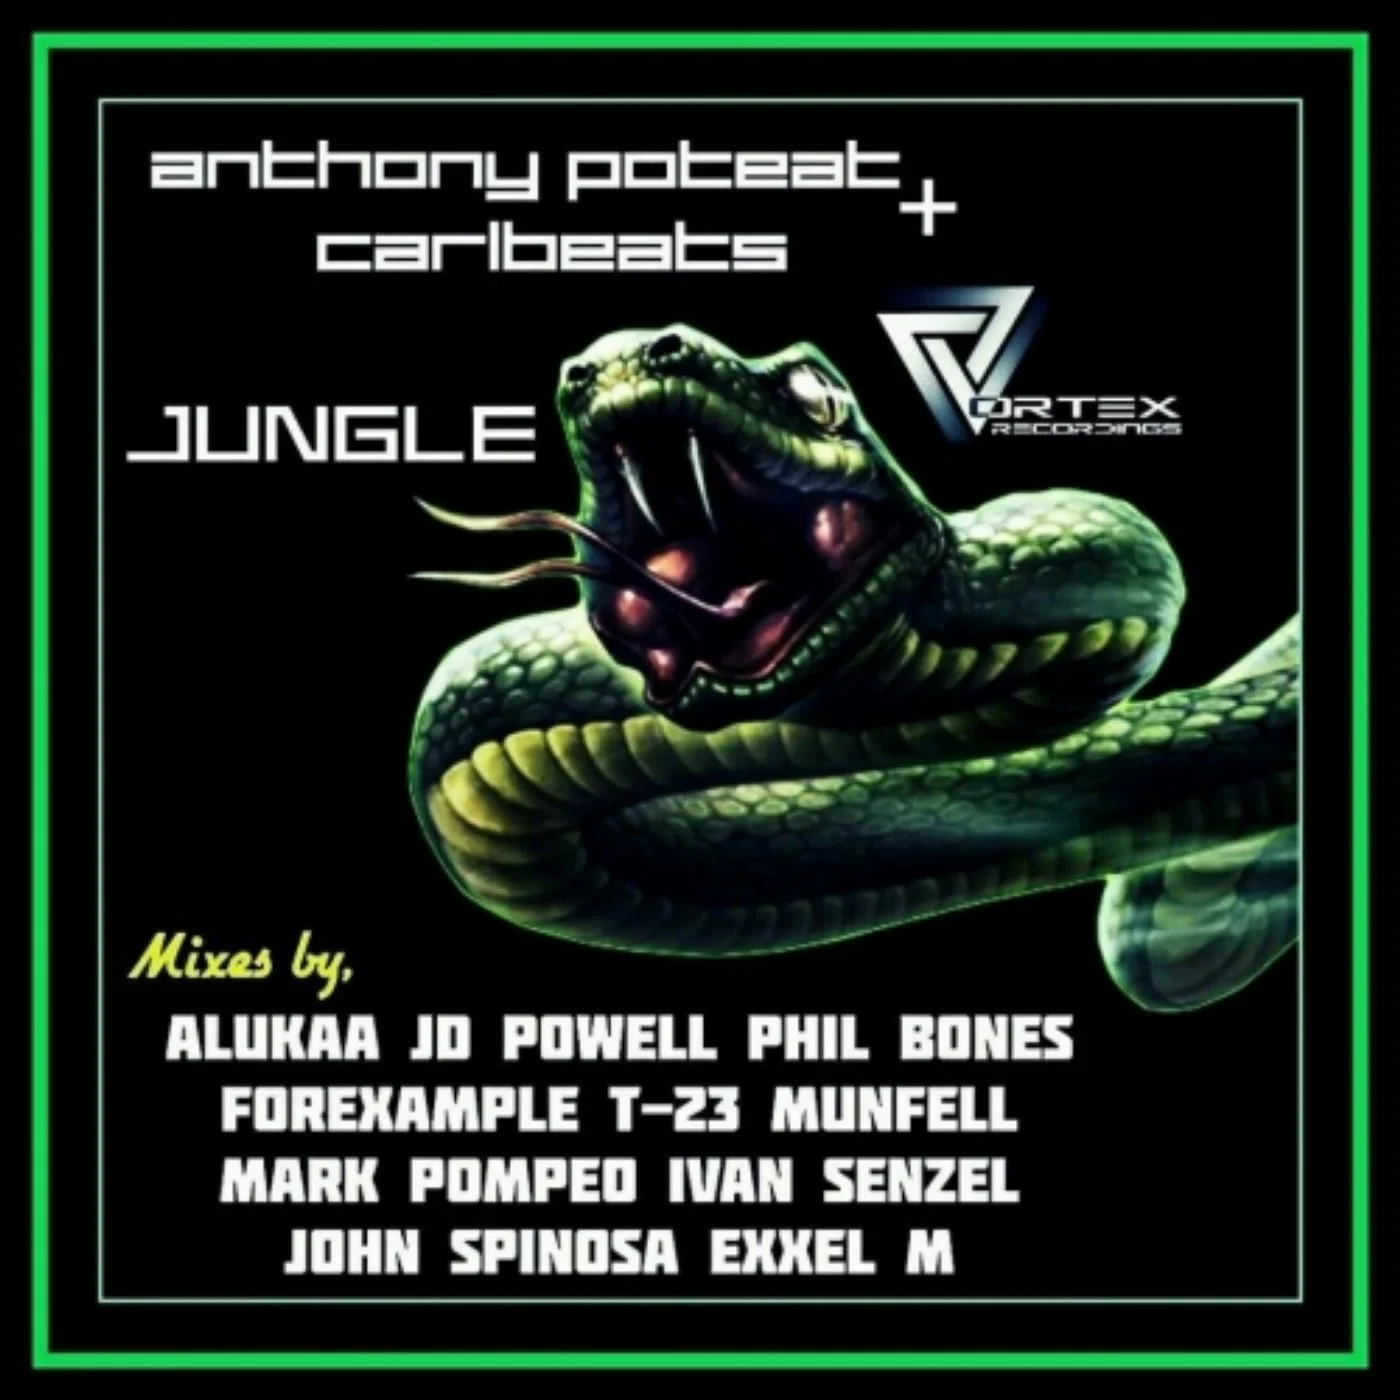 Jungle John Spinosa Remix